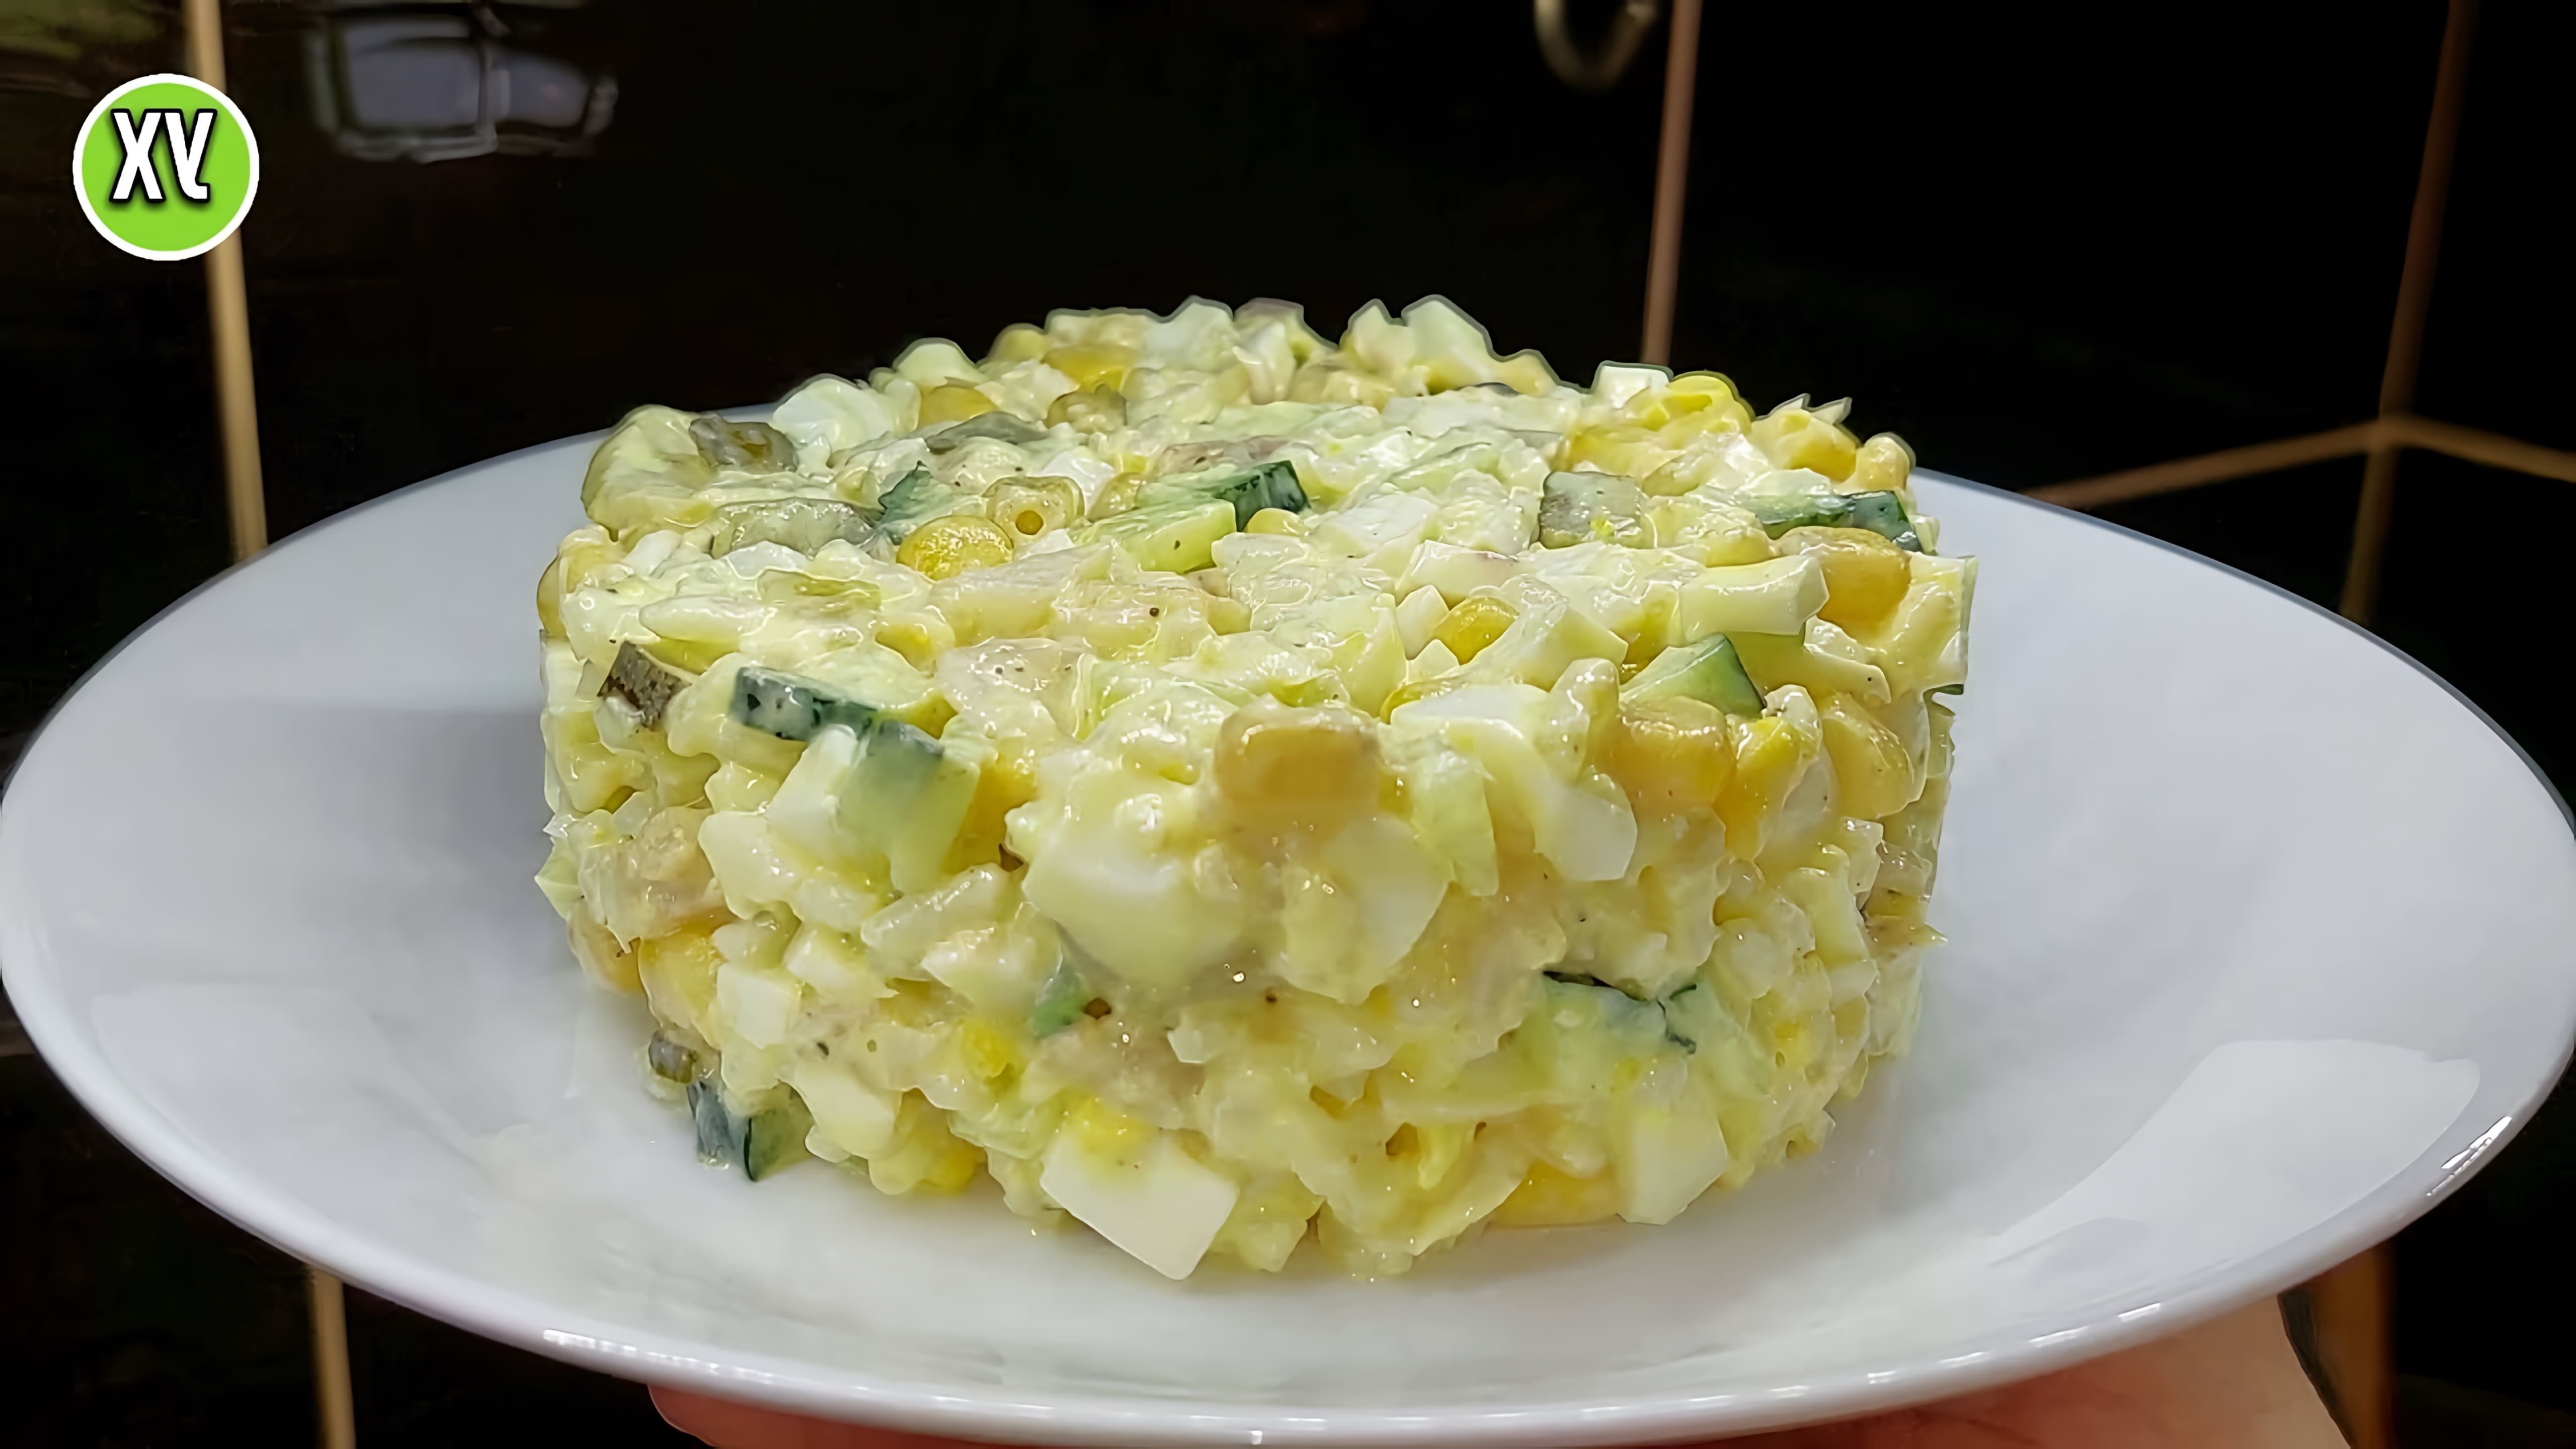 В этом видео демонстрируется рецепт крабового салата, который отличается от классического варианта